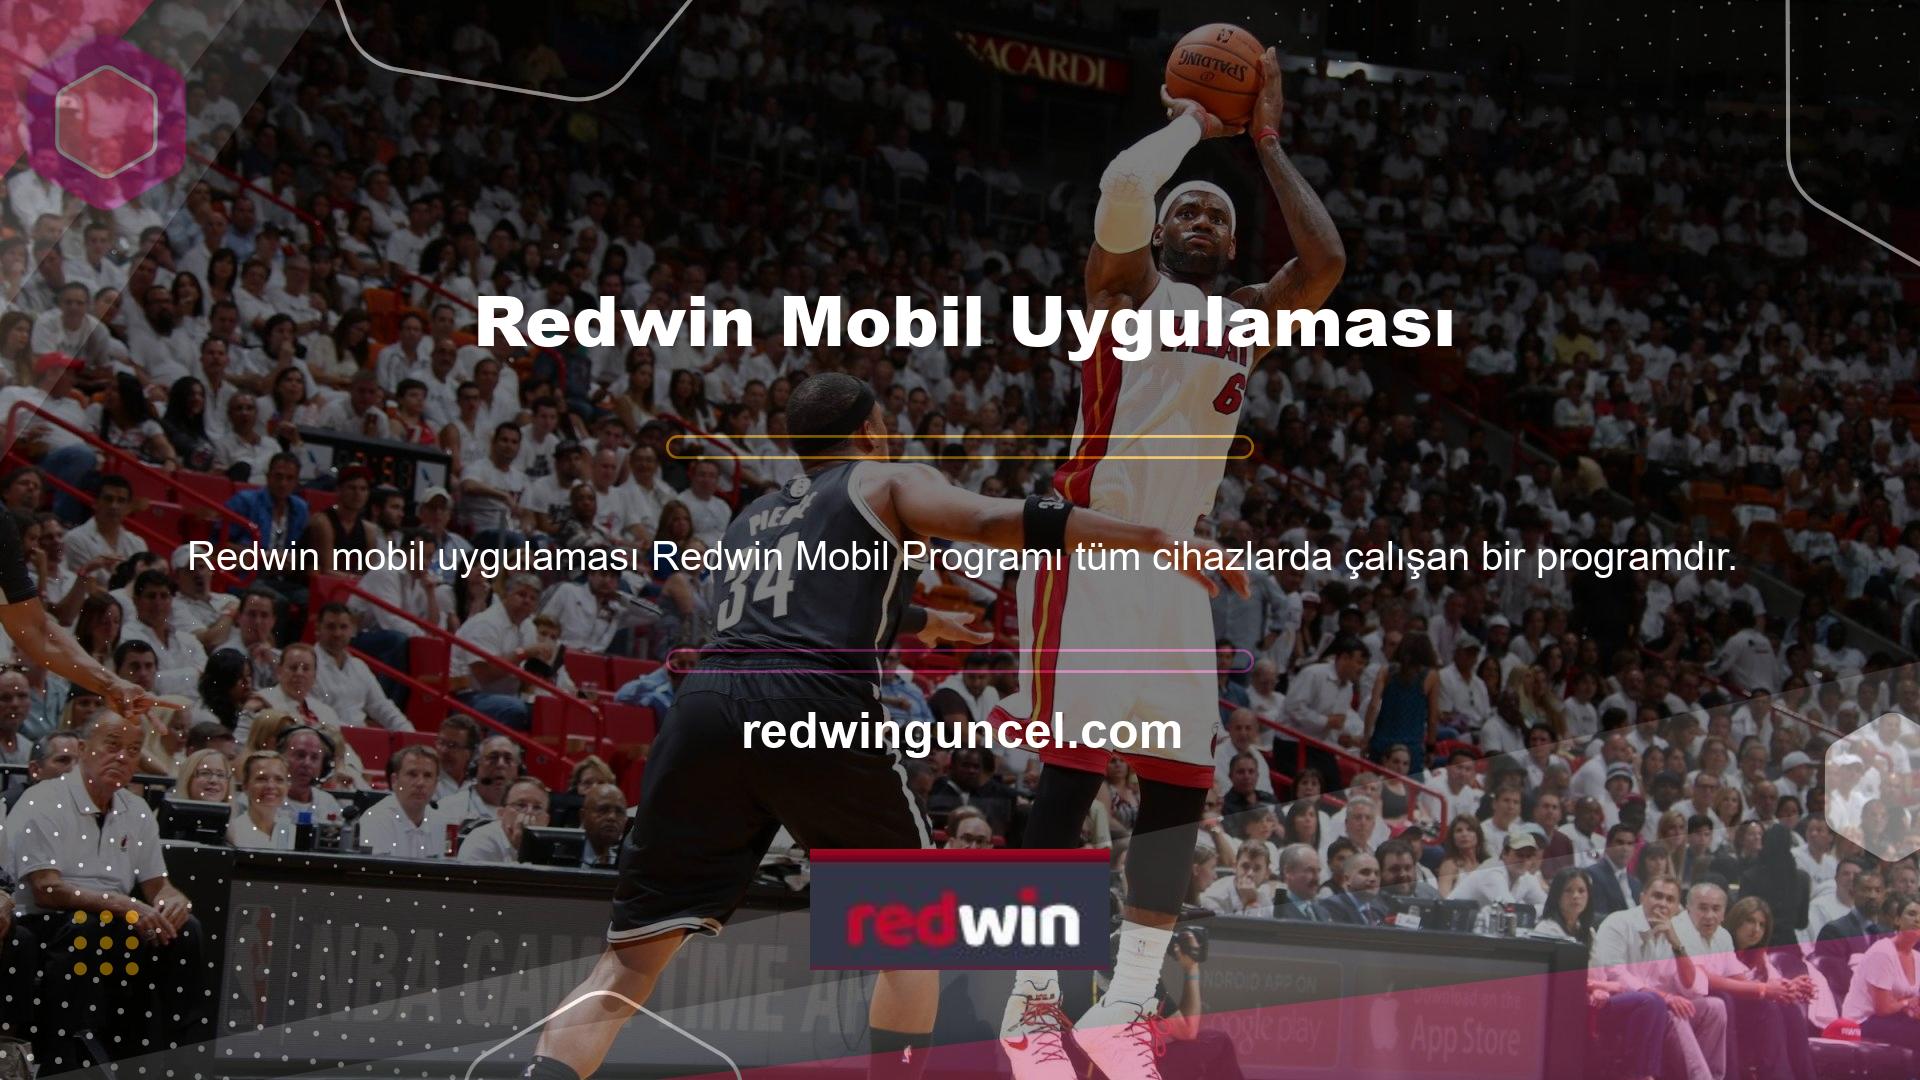 Redwin, sadece bir mobil web sitesi değil, aynı zamanda çevrimiçi bir platformda yer alan müşteriye dönük bir web sitesi tasarladı